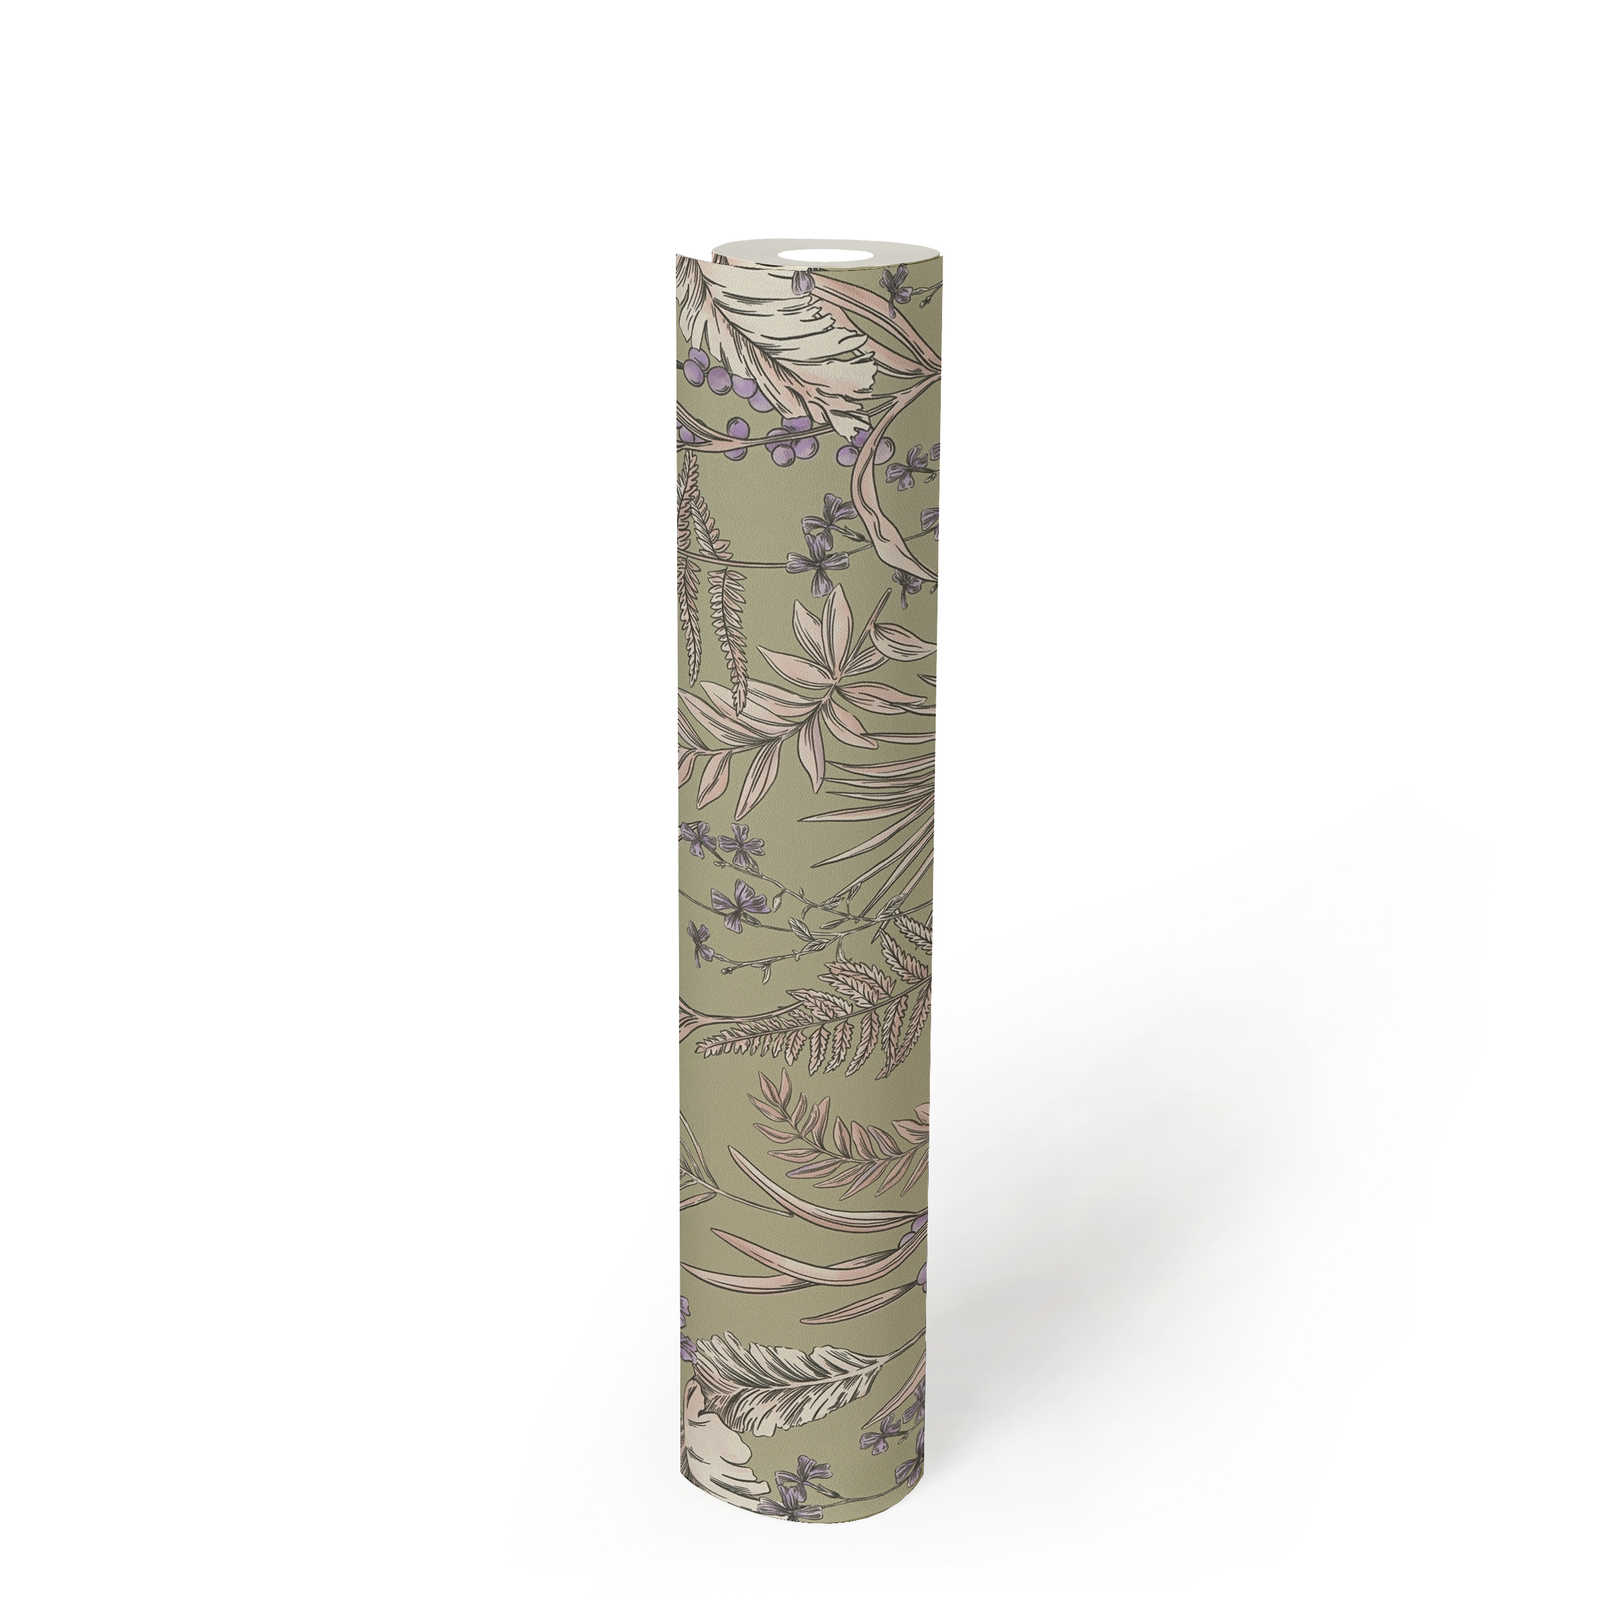             papier peint en papier moderne style floral structuré avec des feuilles et des fleurs - gris, crème, violet
        